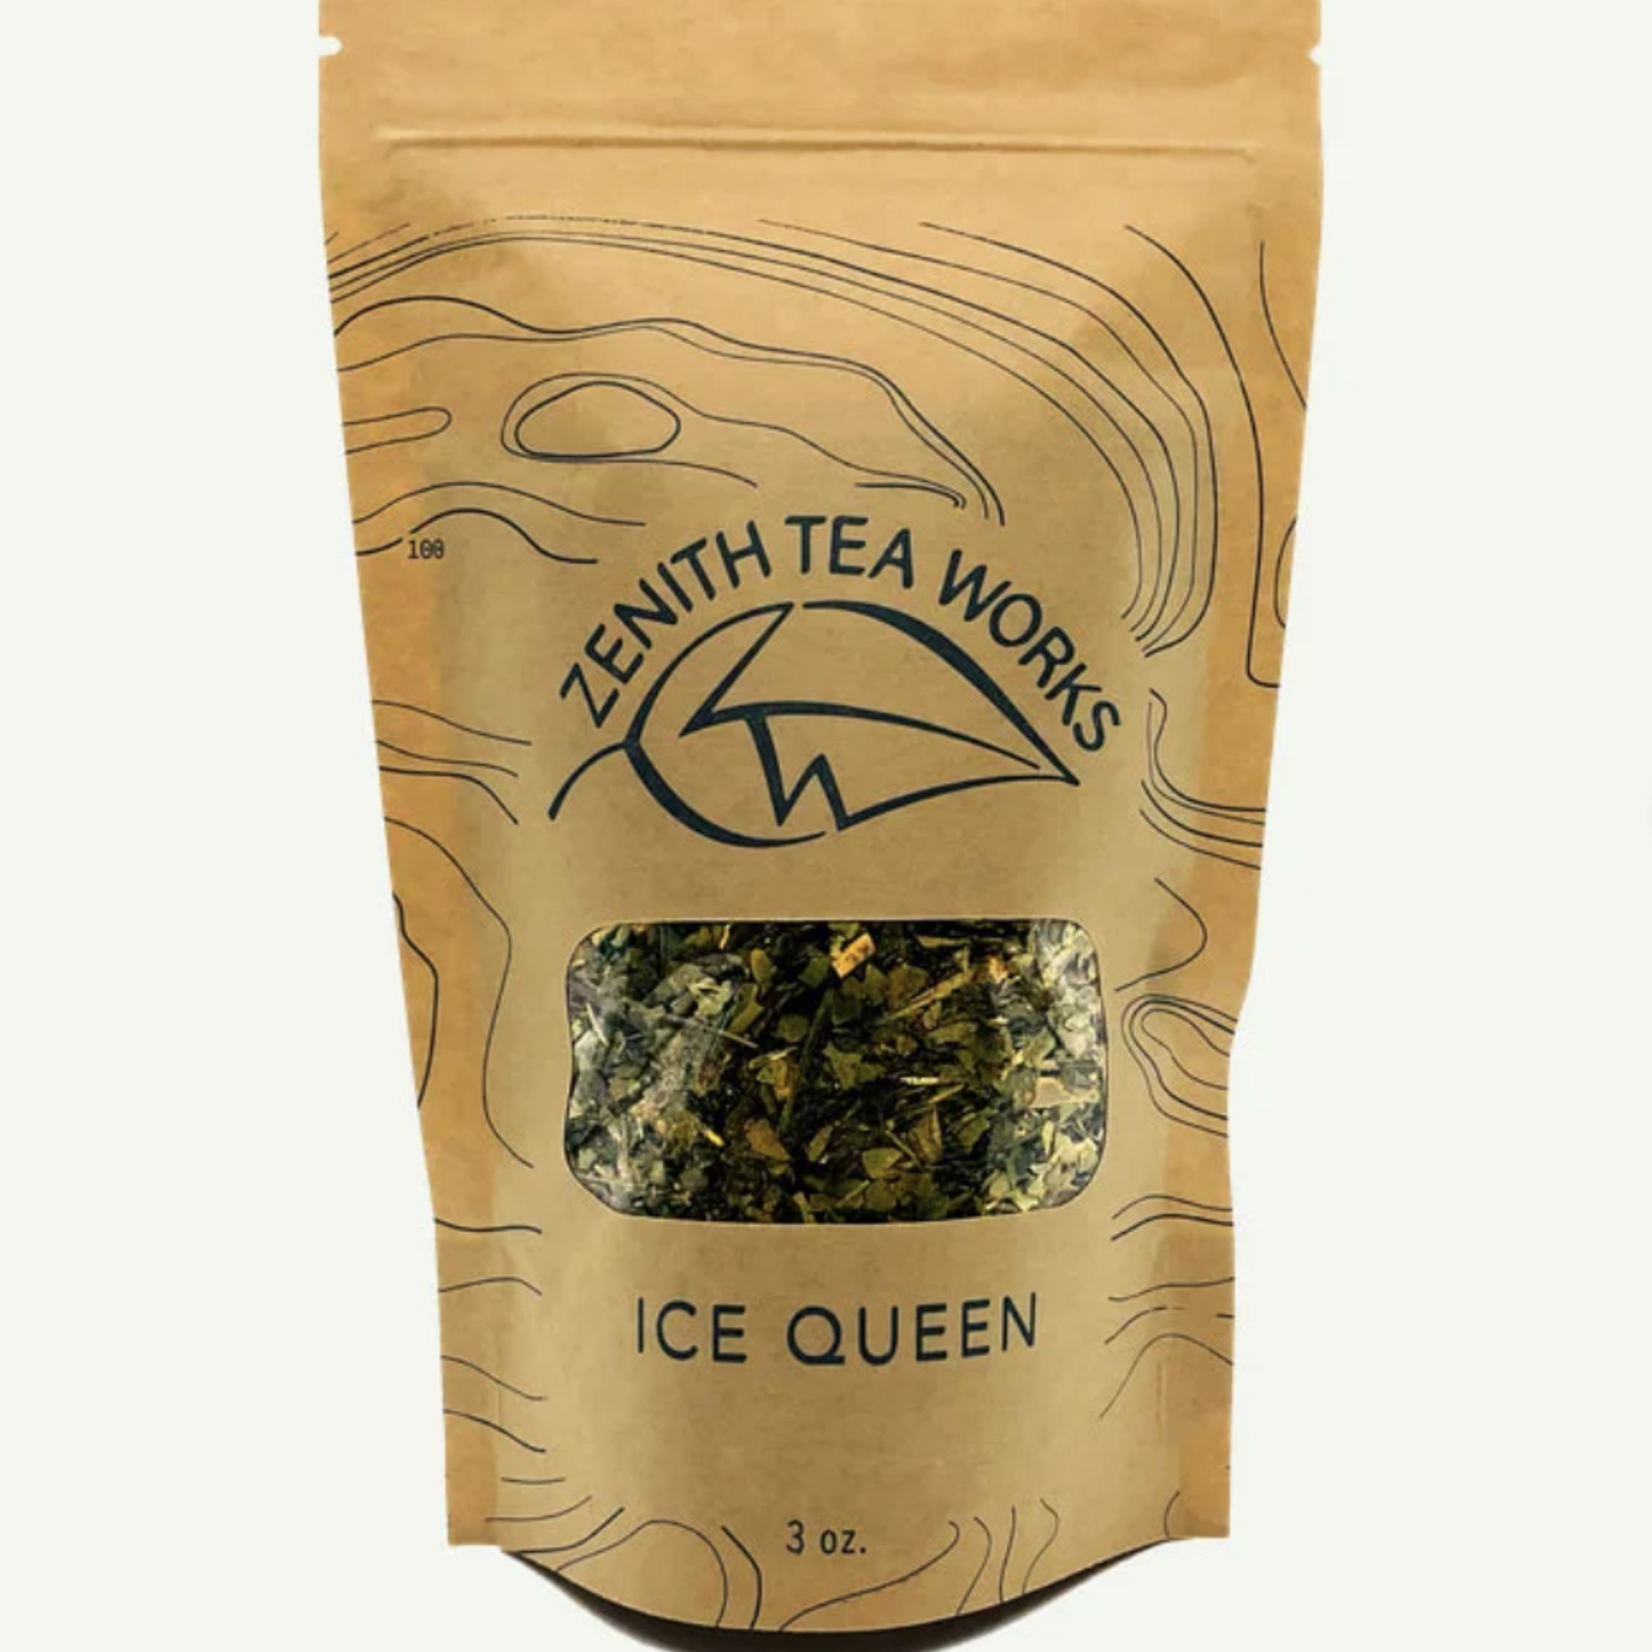 Zenith Tea Works Ice Queen, Herbal Tea